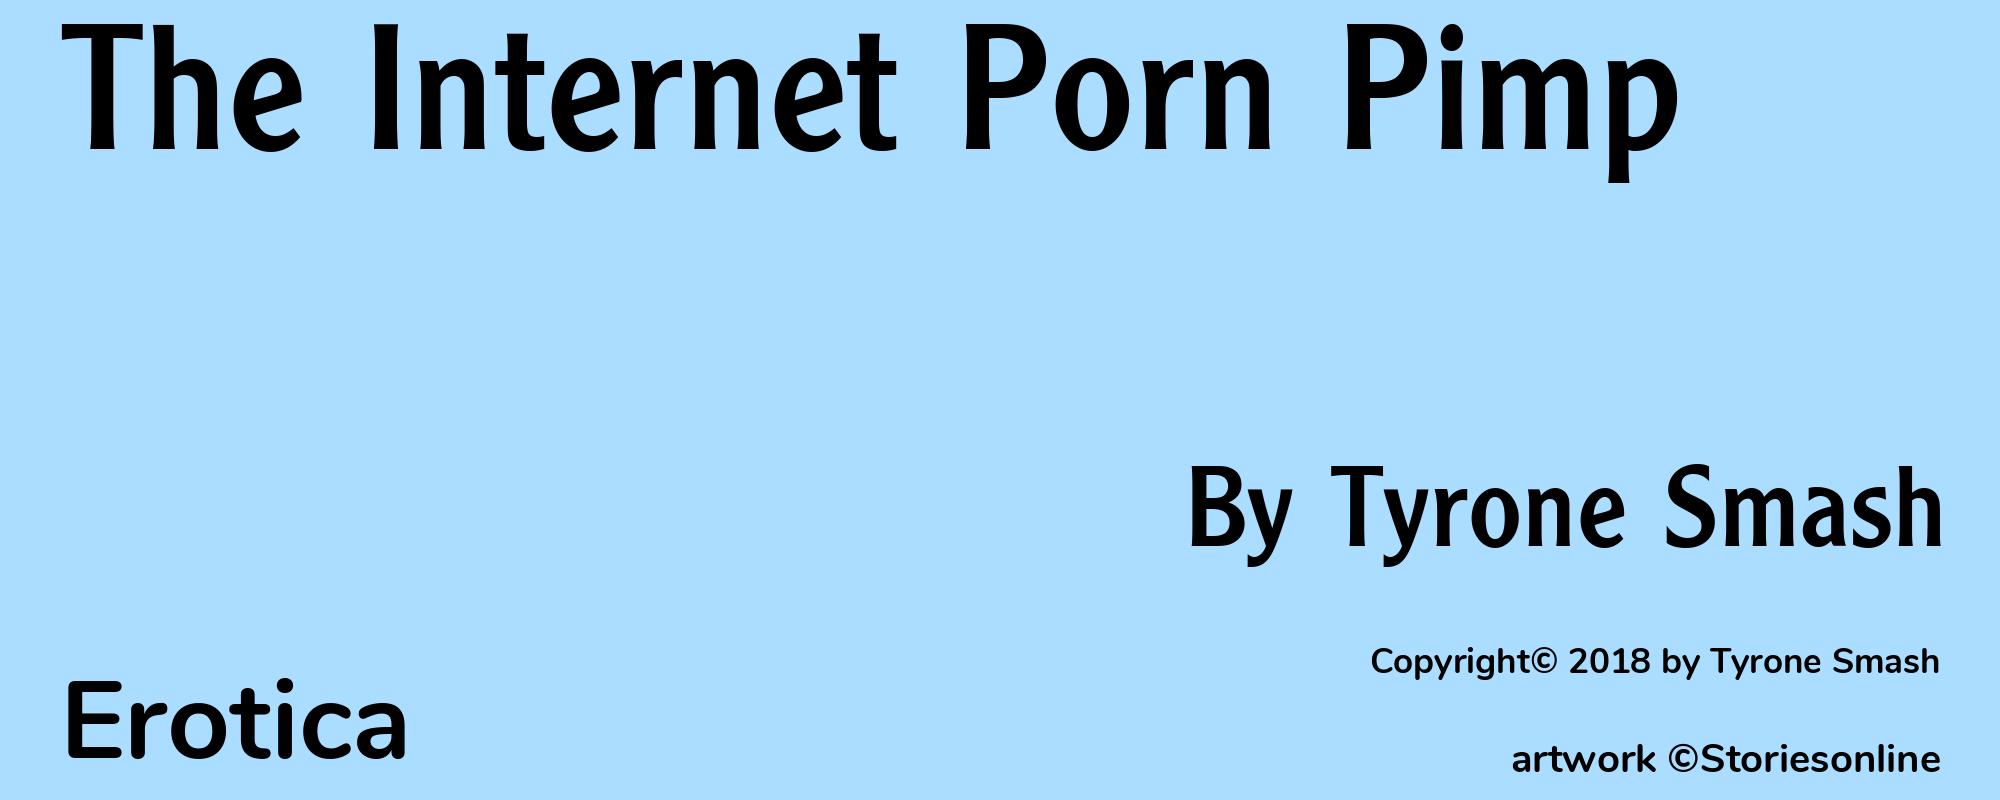 The Internet Porn Pimp - Cover